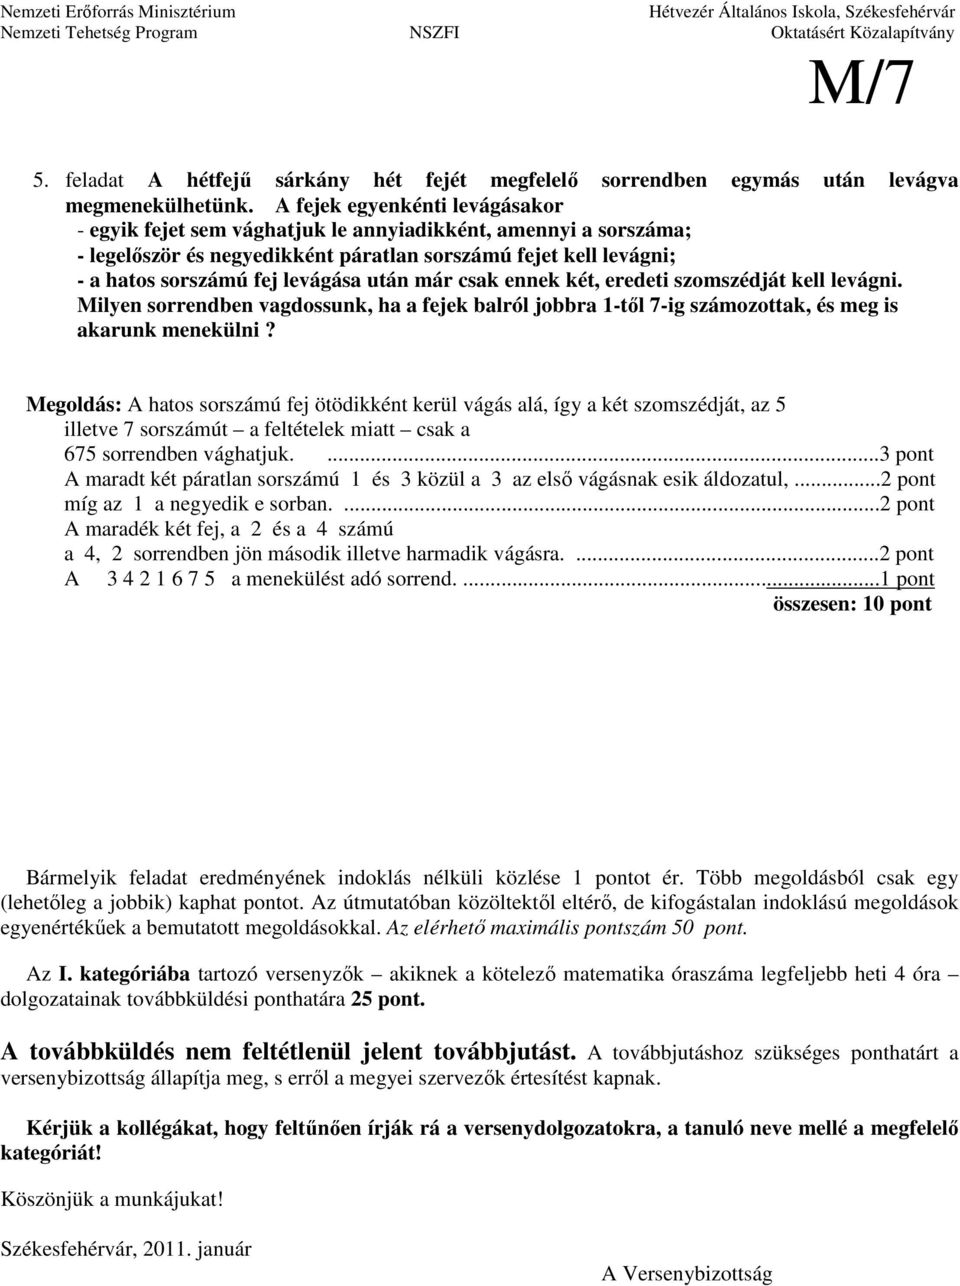 Varga Tamás Matematikaverseny 7. osztályos feladatok megoldásai iskolai  forduló PDF Free Download